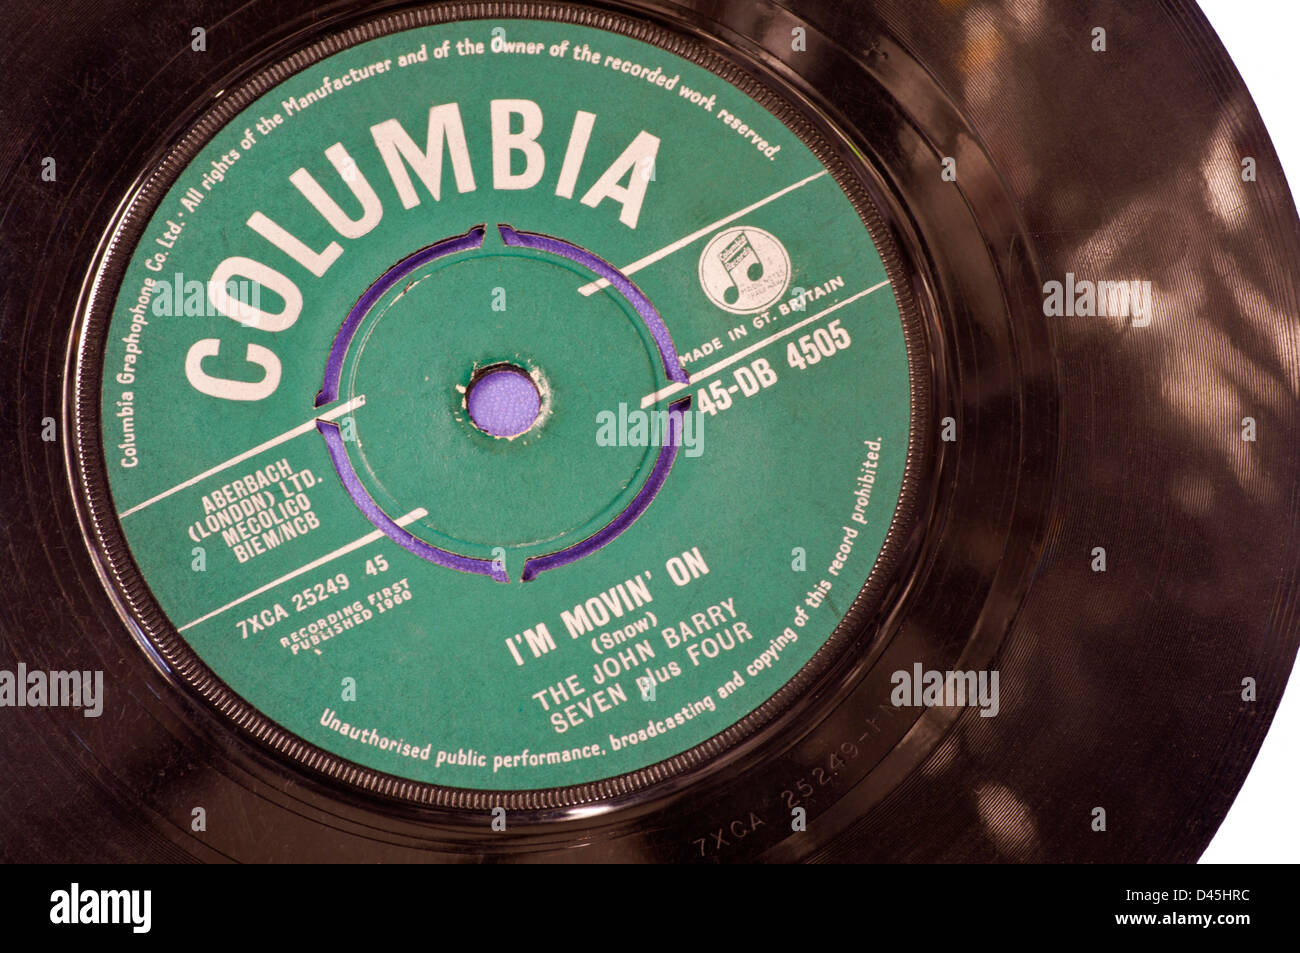 Columbia Record Label sur un seul disque vinyle 45 tours Photo Stock - Alamy